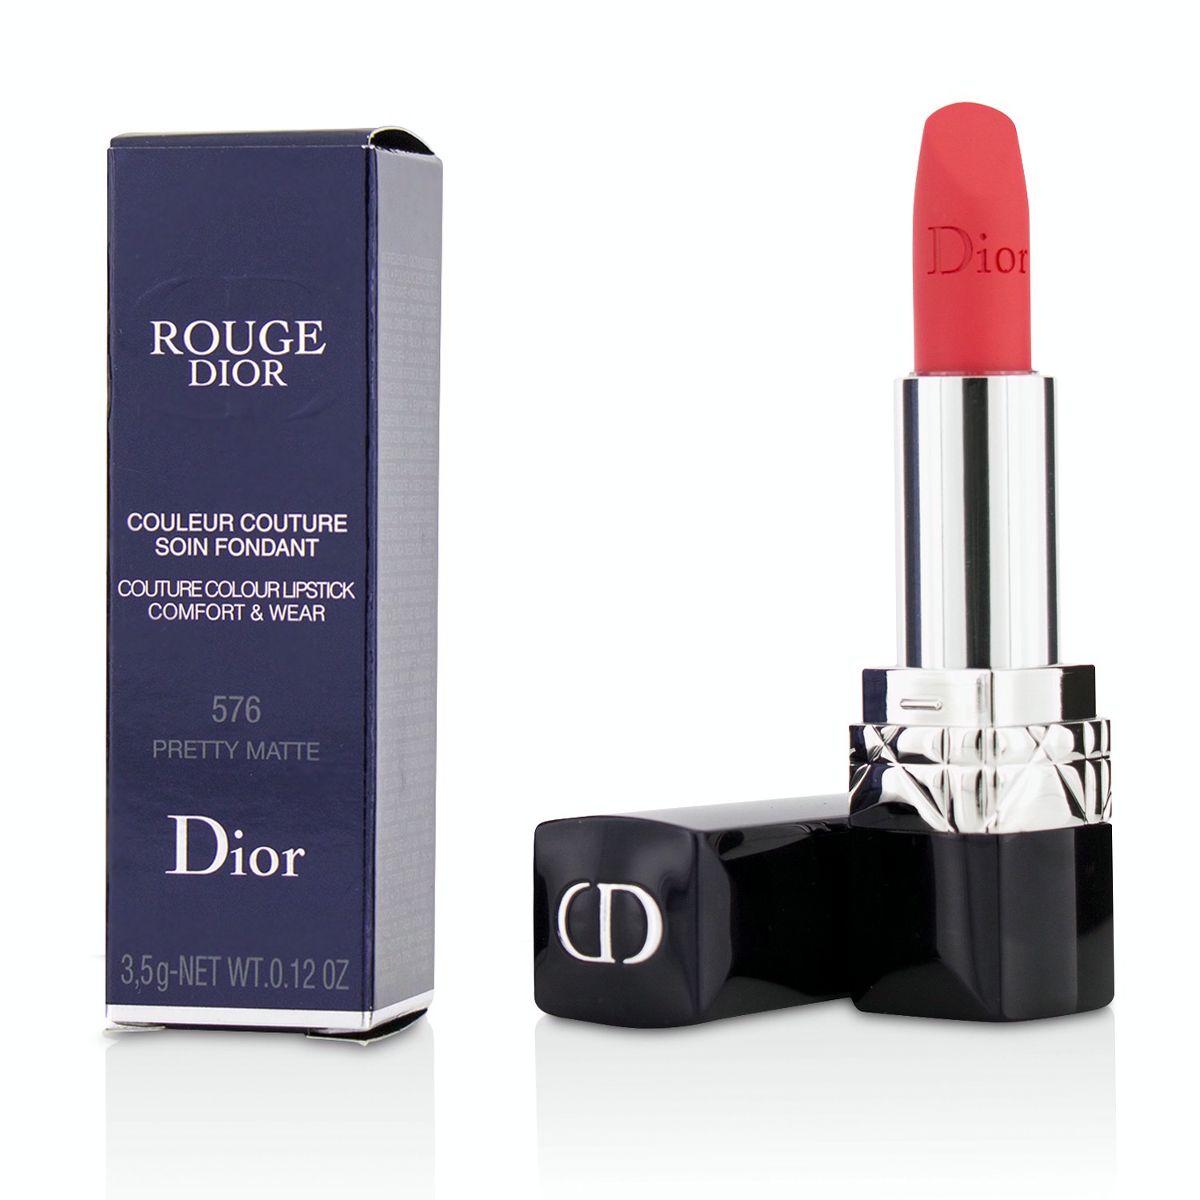 Rouge Dior Couture Colour Comfort  Wear Matte Lipstick - # 576 Pretty Matte Christian Dior Image